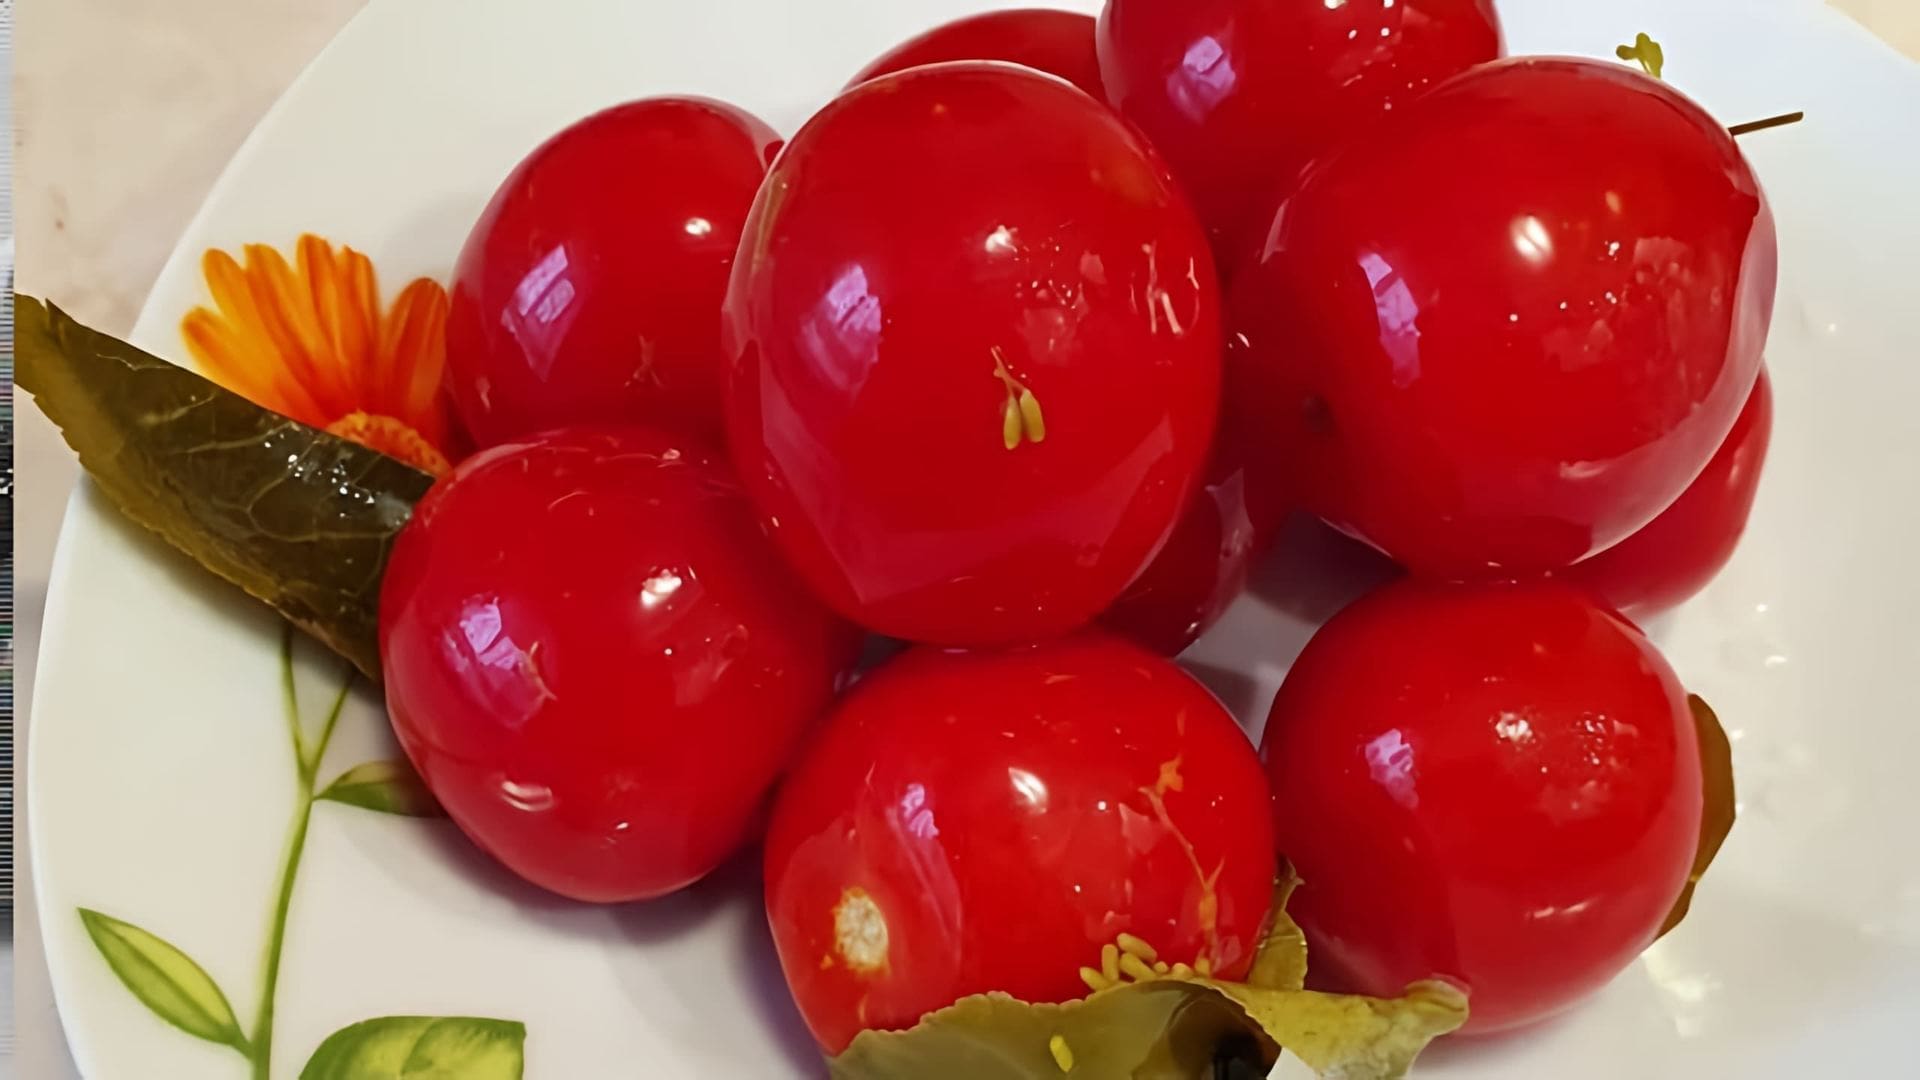 Очень Вкусные Квашеные помидоры - это видео-ролик, который показывает процесс приготовления вкусных и полезных квашеных помидоров